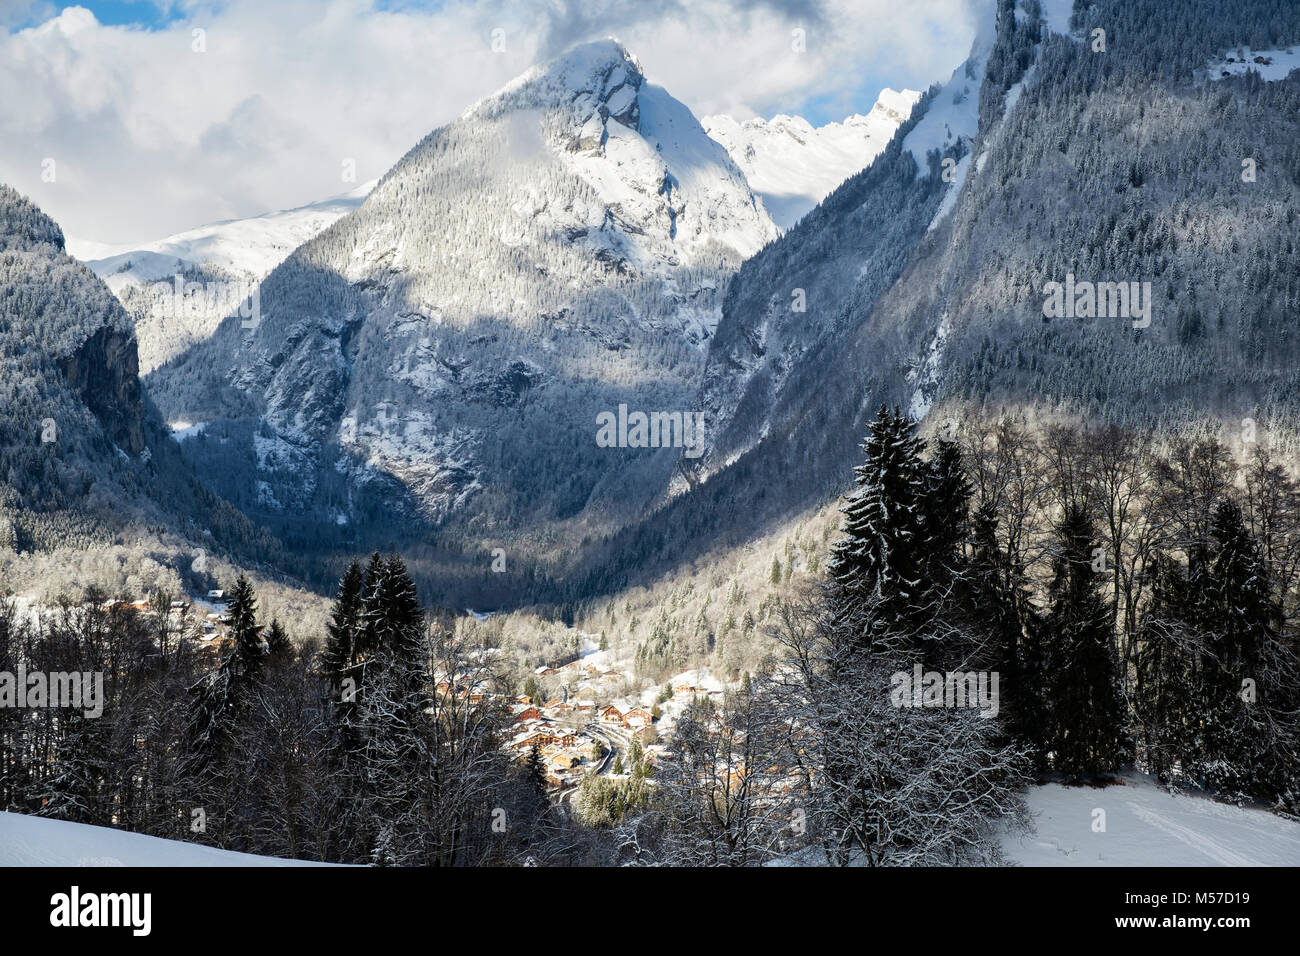 Vista dal fianco della montagna con la neve sulle montagne nelle Alpi francesi al di sopra del villaggio Samoens, Vallée du Giffre, Haute Savoie, Rhone-Alpes, Francia, Eur Foto Stock